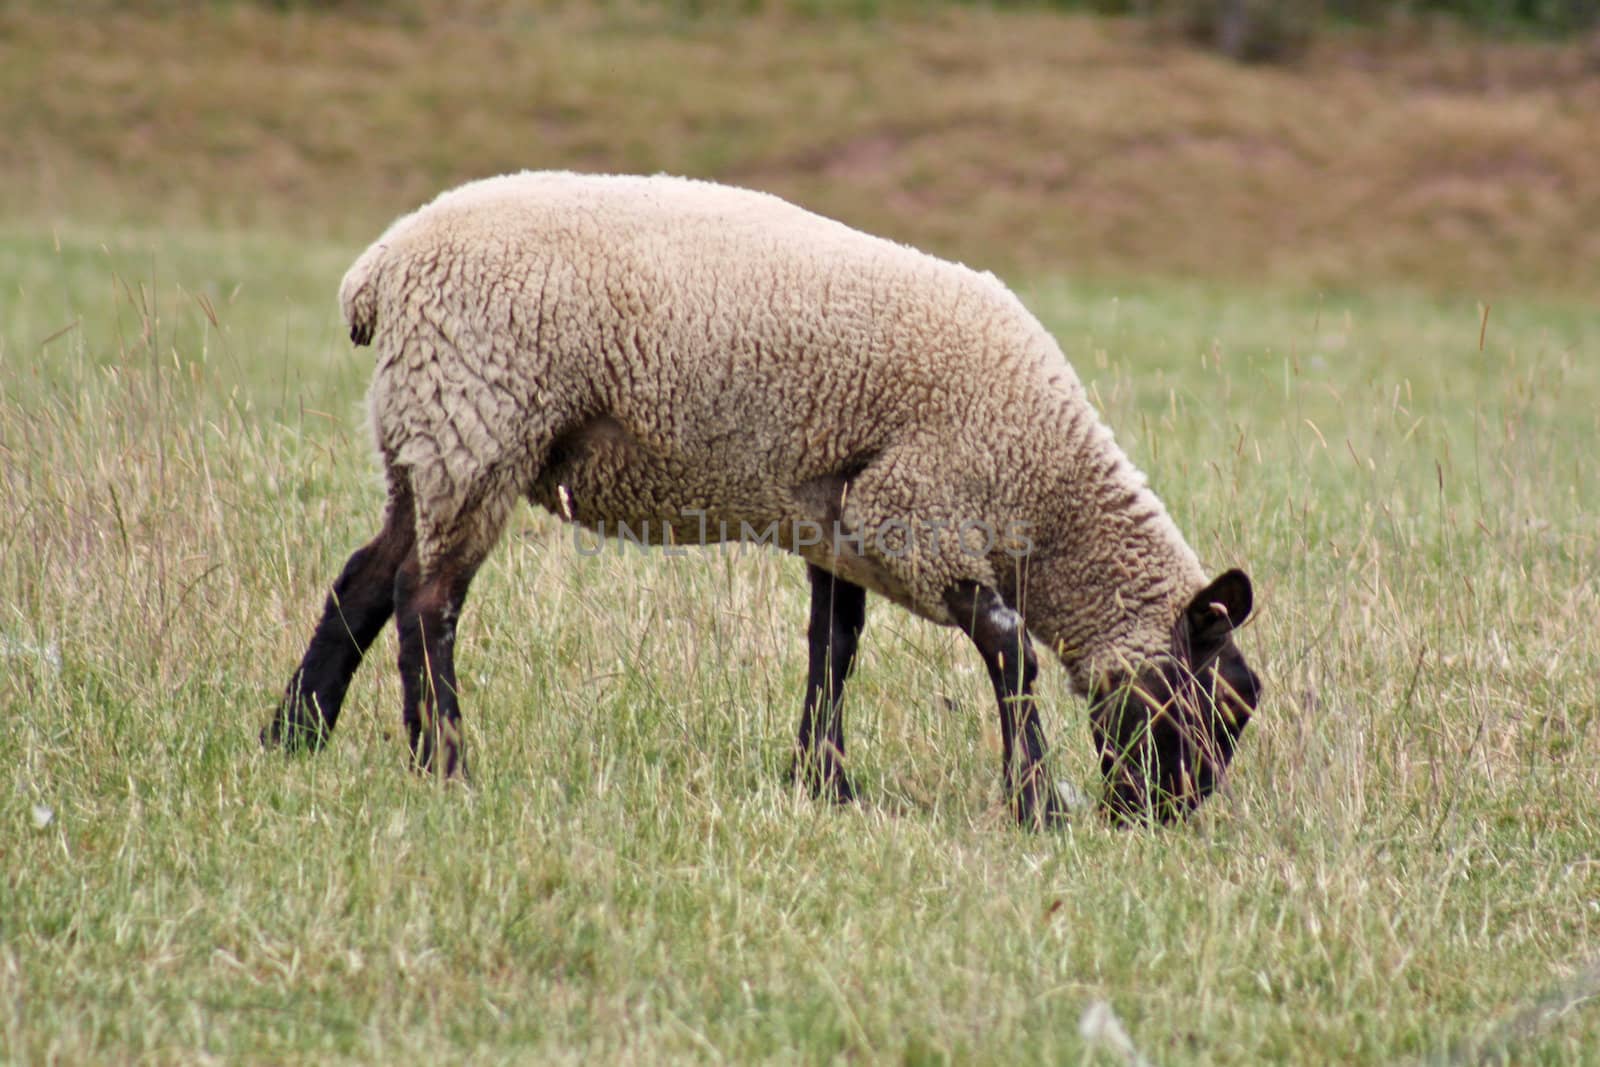 a sheep grazing in a field